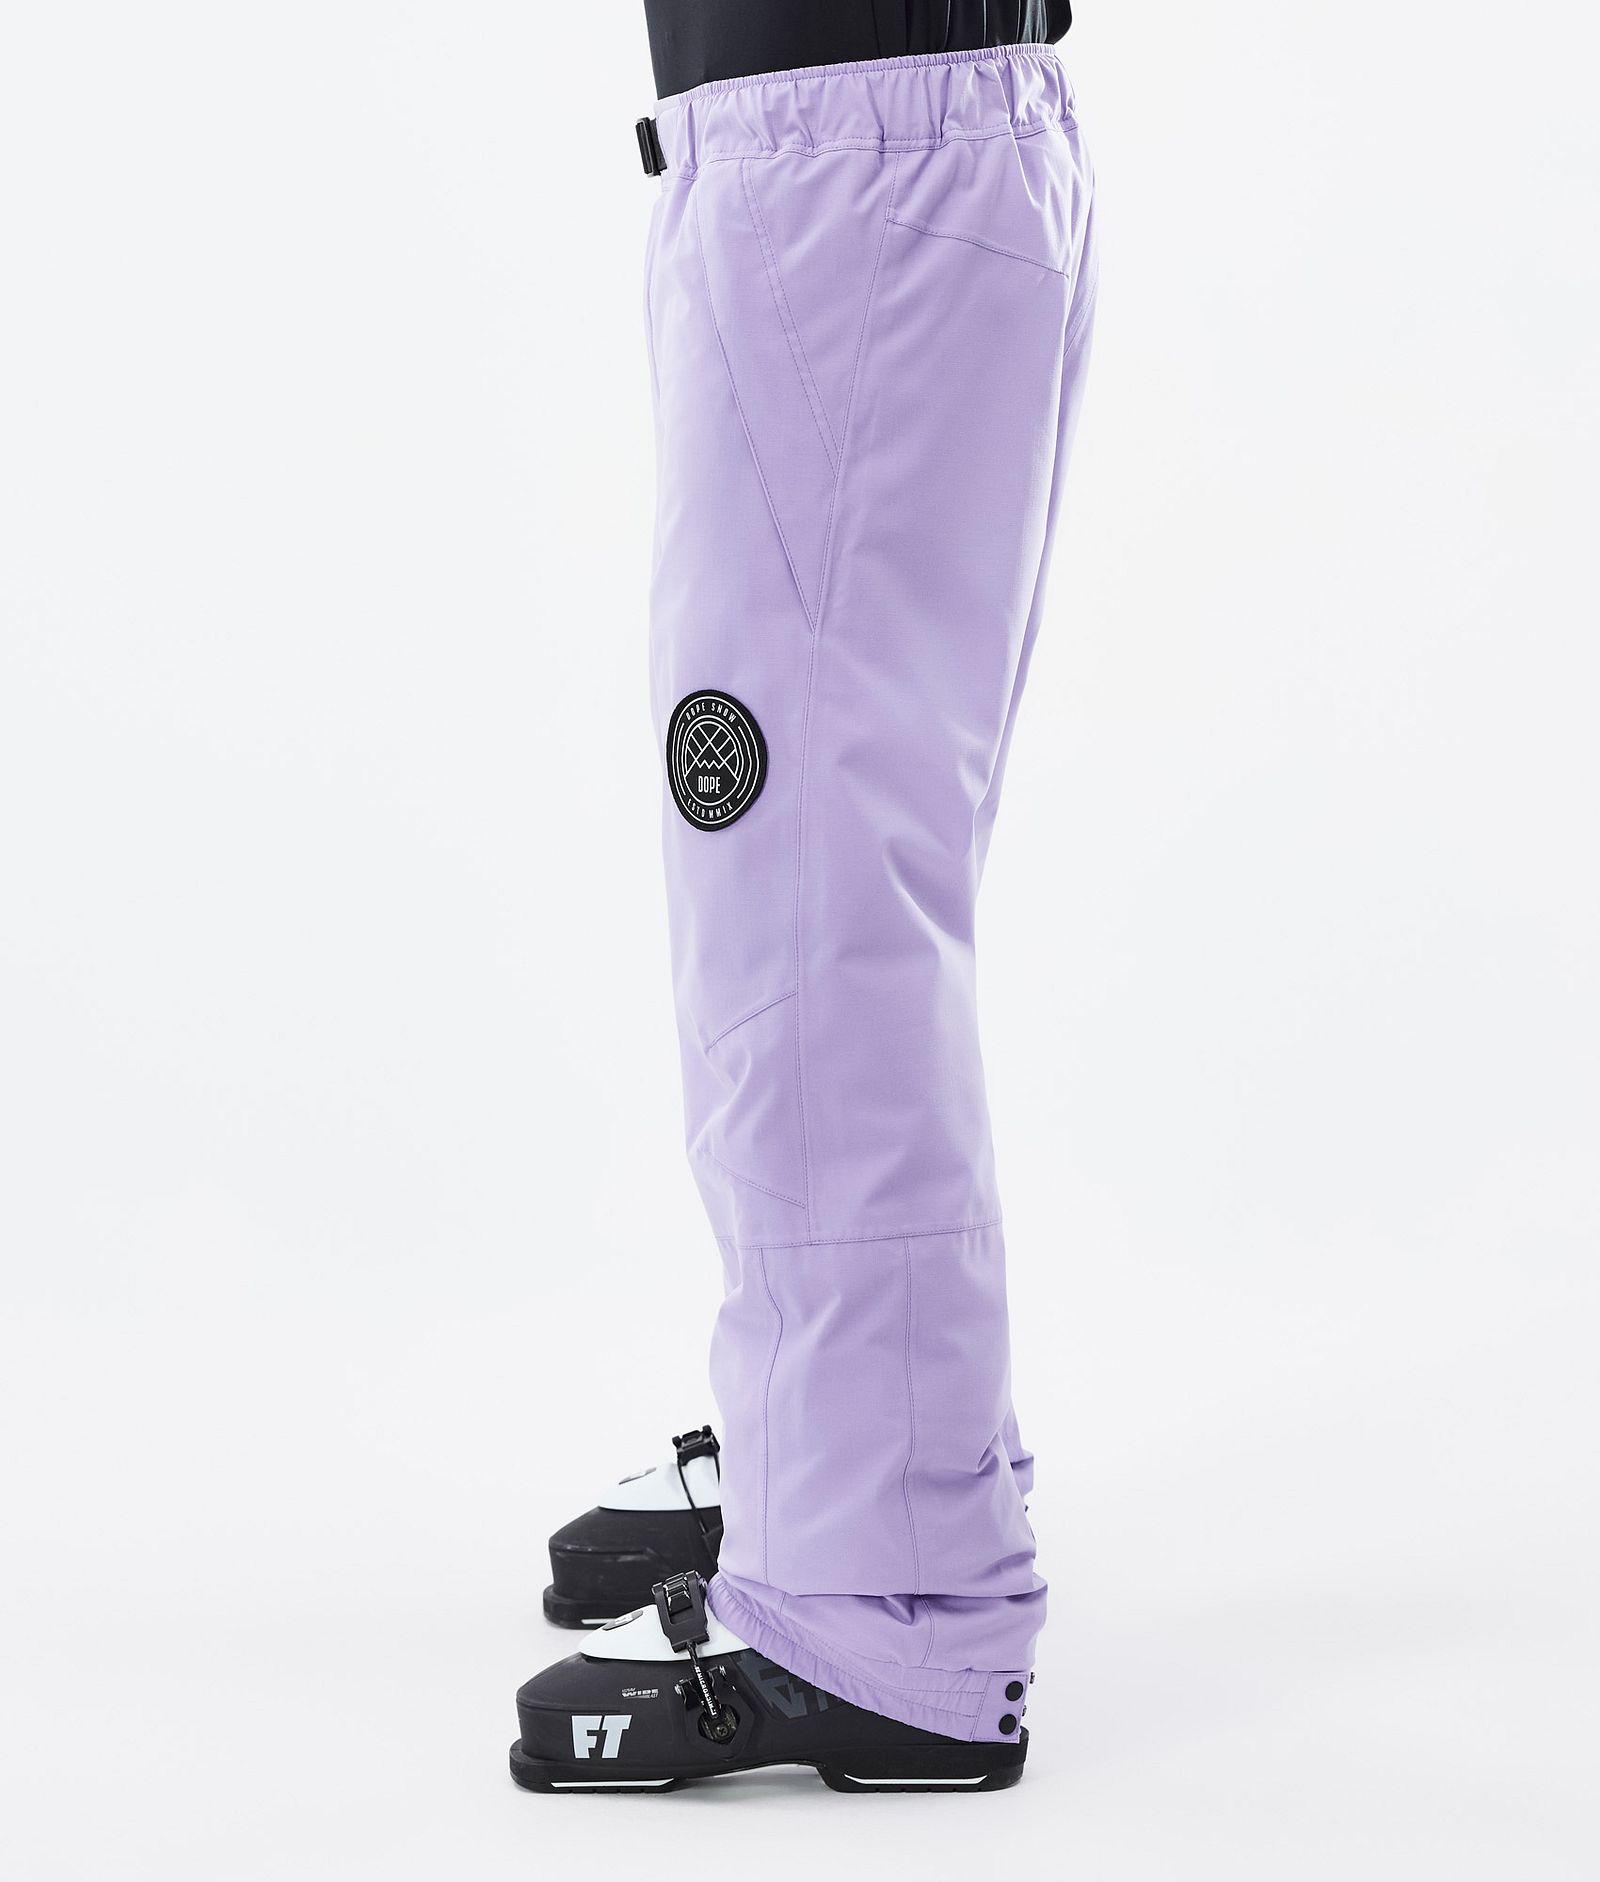 Blizzard 2022 Spodnie Narciarskie Mężczyźni Faded violet